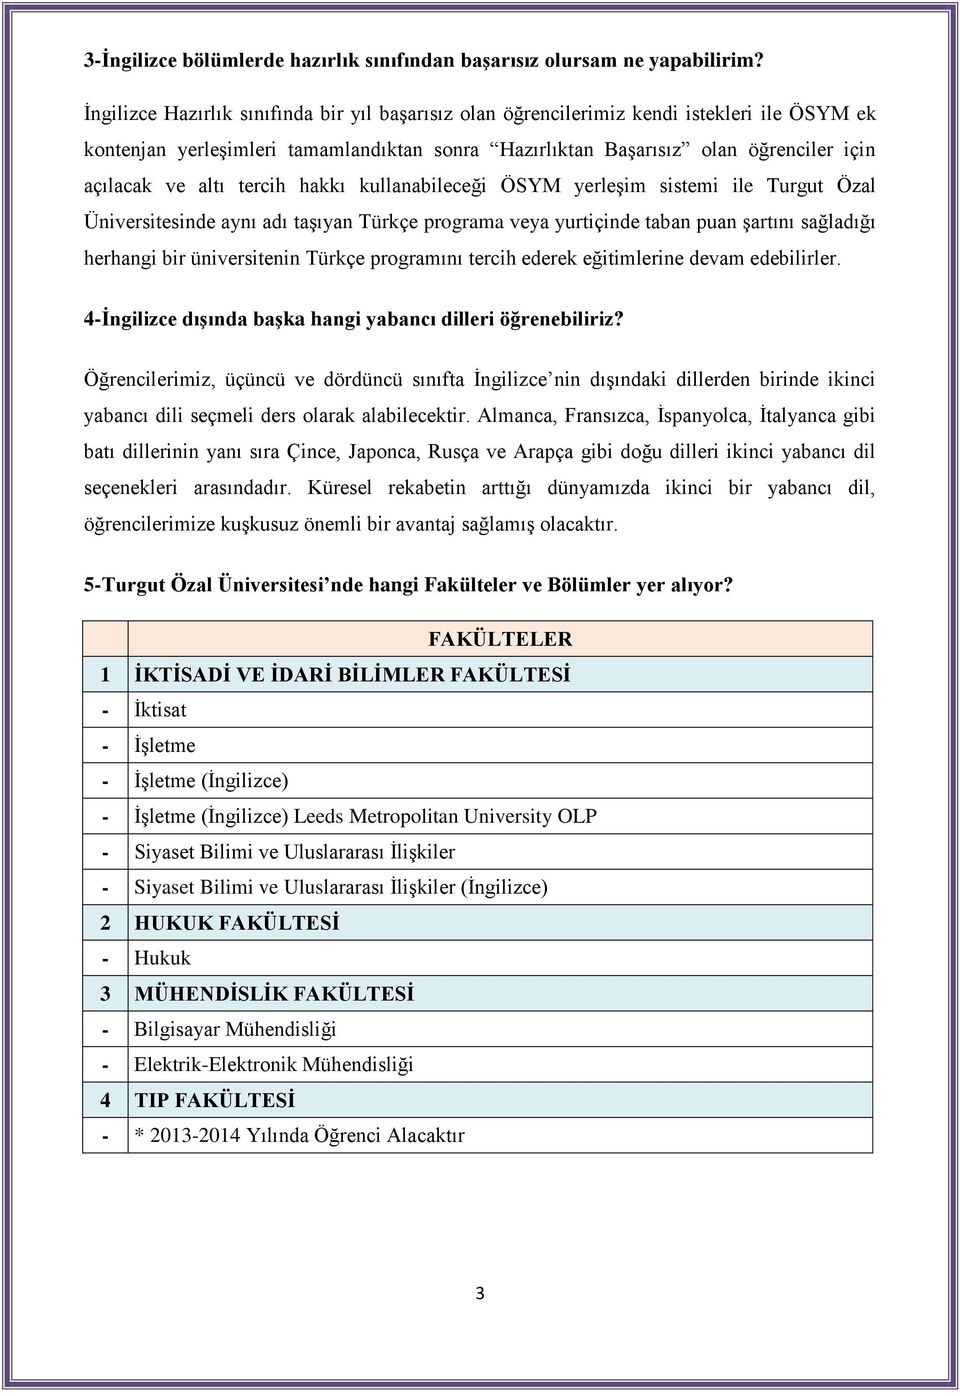 tercih hakkı kullanabileceği ÖSYM yerleşim sistemi ile Turgut Özal Üniversitesinde aynı adı taşıyan Türkçe programa veya yurtiçinde taban puan şartını sağladığı herhangi bir üniversitenin Türkçe